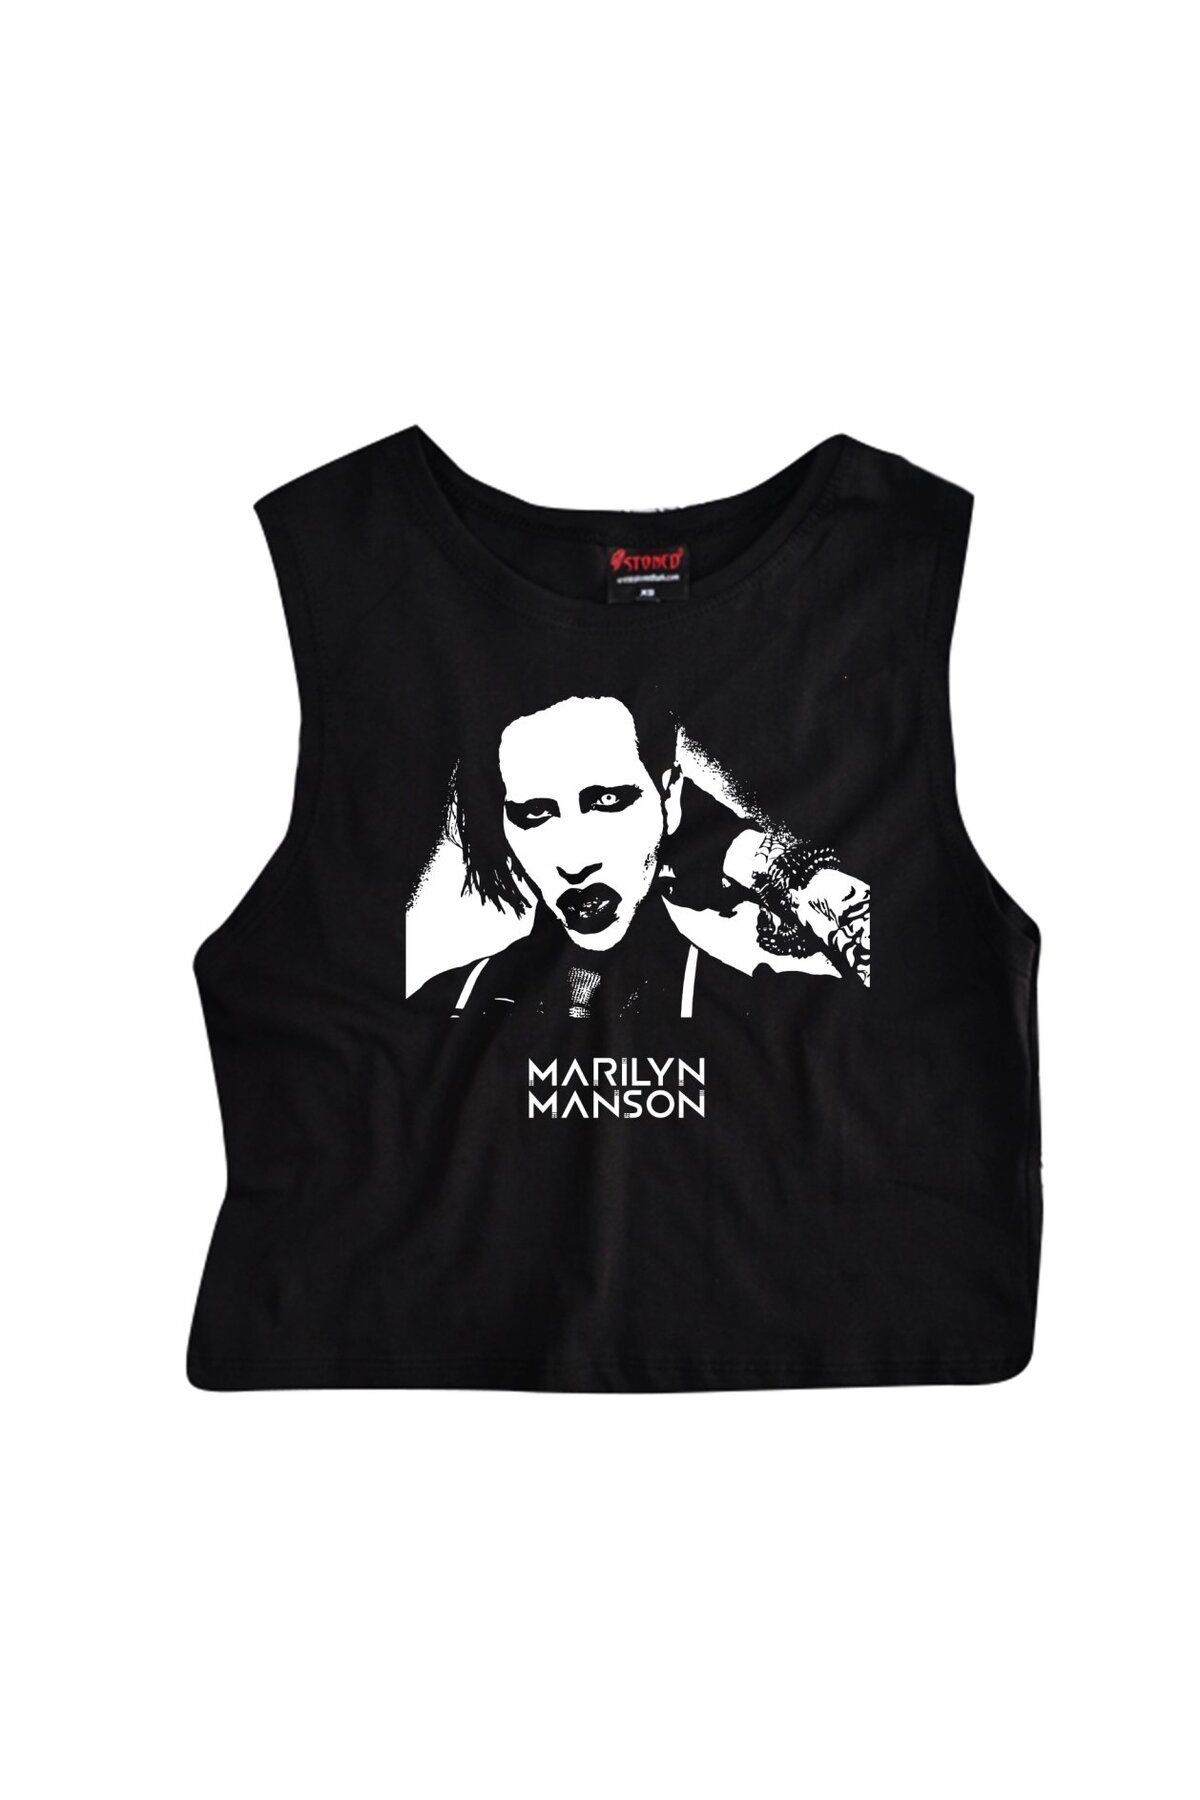 fame-stoned Marilyn Manson Baskılı Göbek Üstü-yarım T-shirt